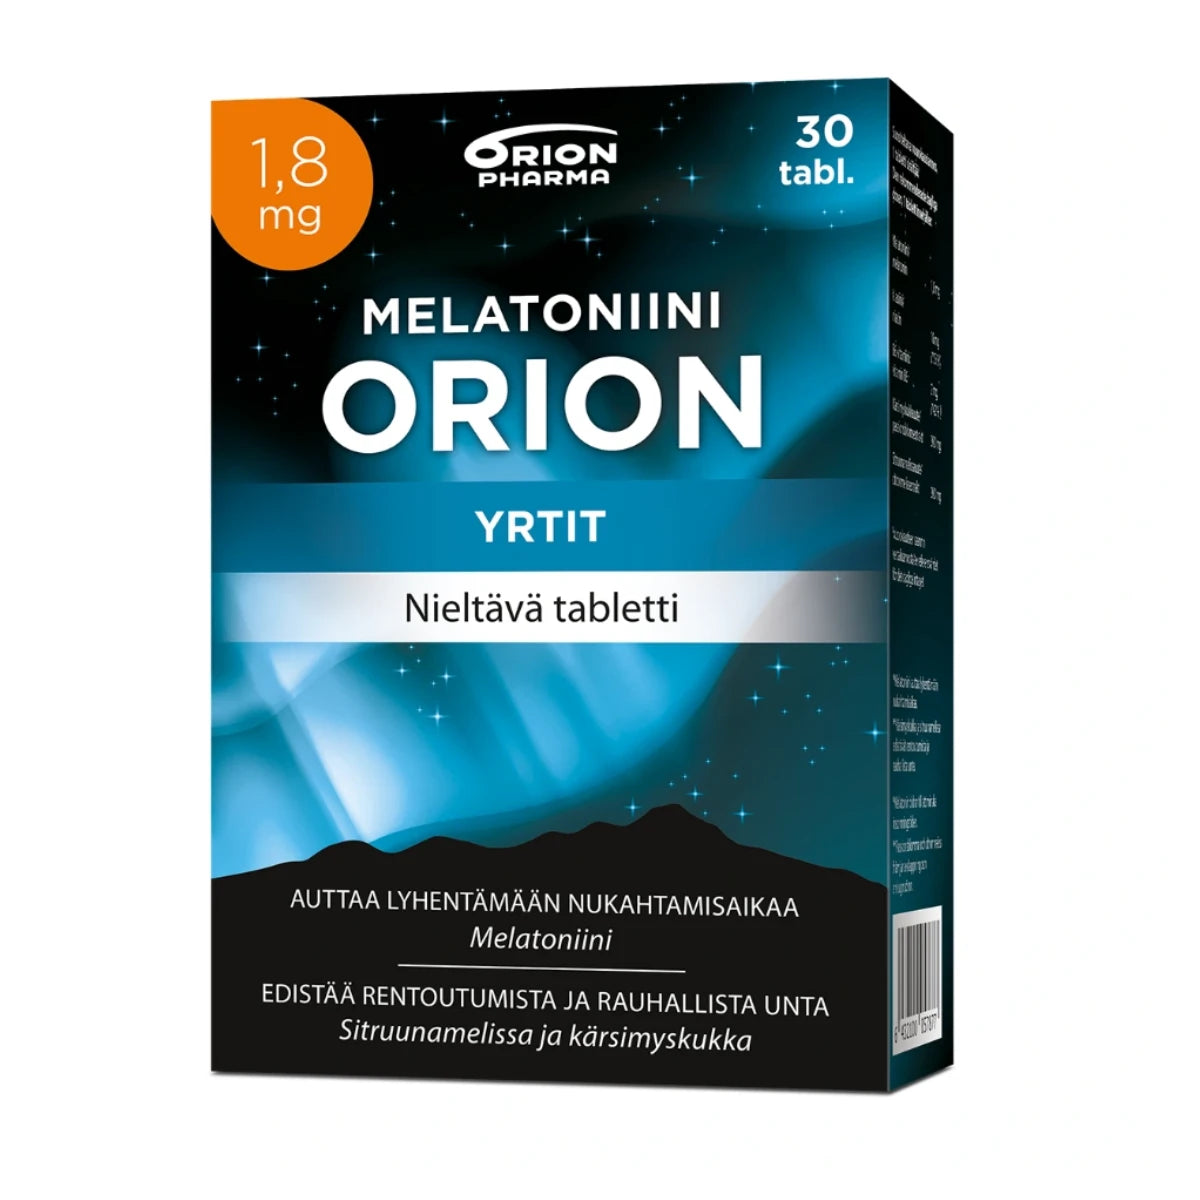 MELATONIINI Orion 1,8 mg yrtit nieltävä tabletti 30 kpl